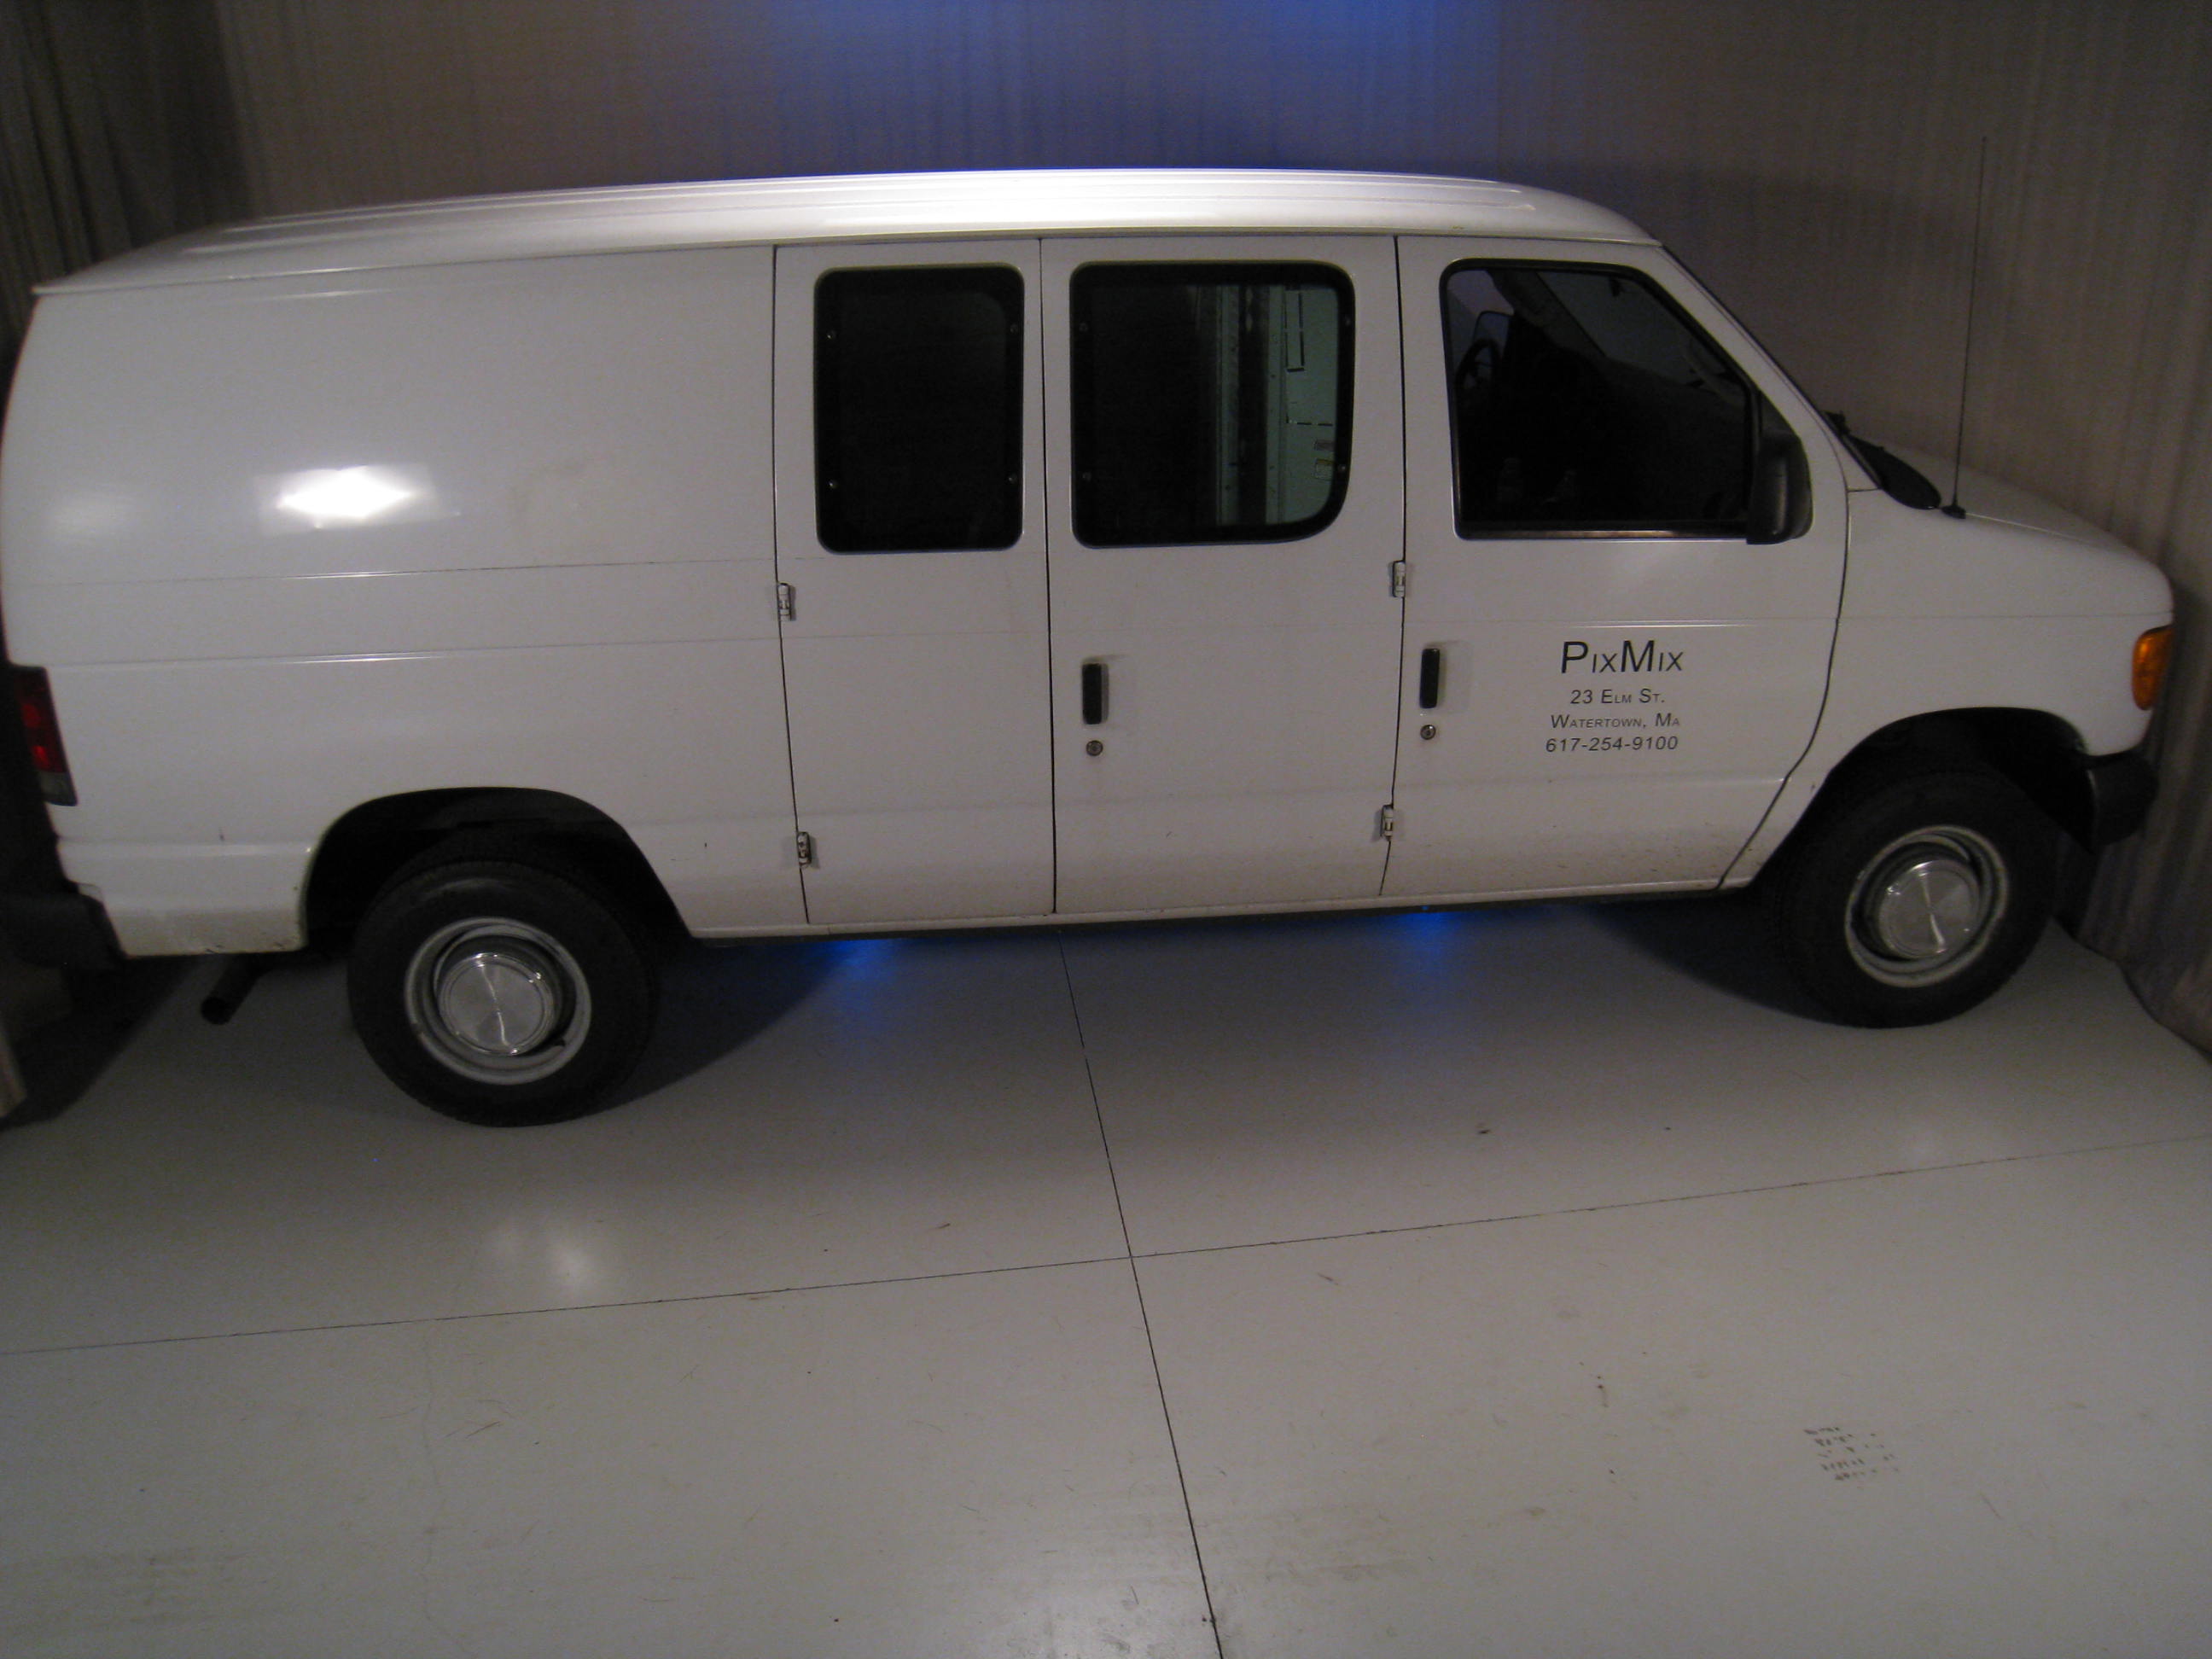 Full Sized Van in Studio